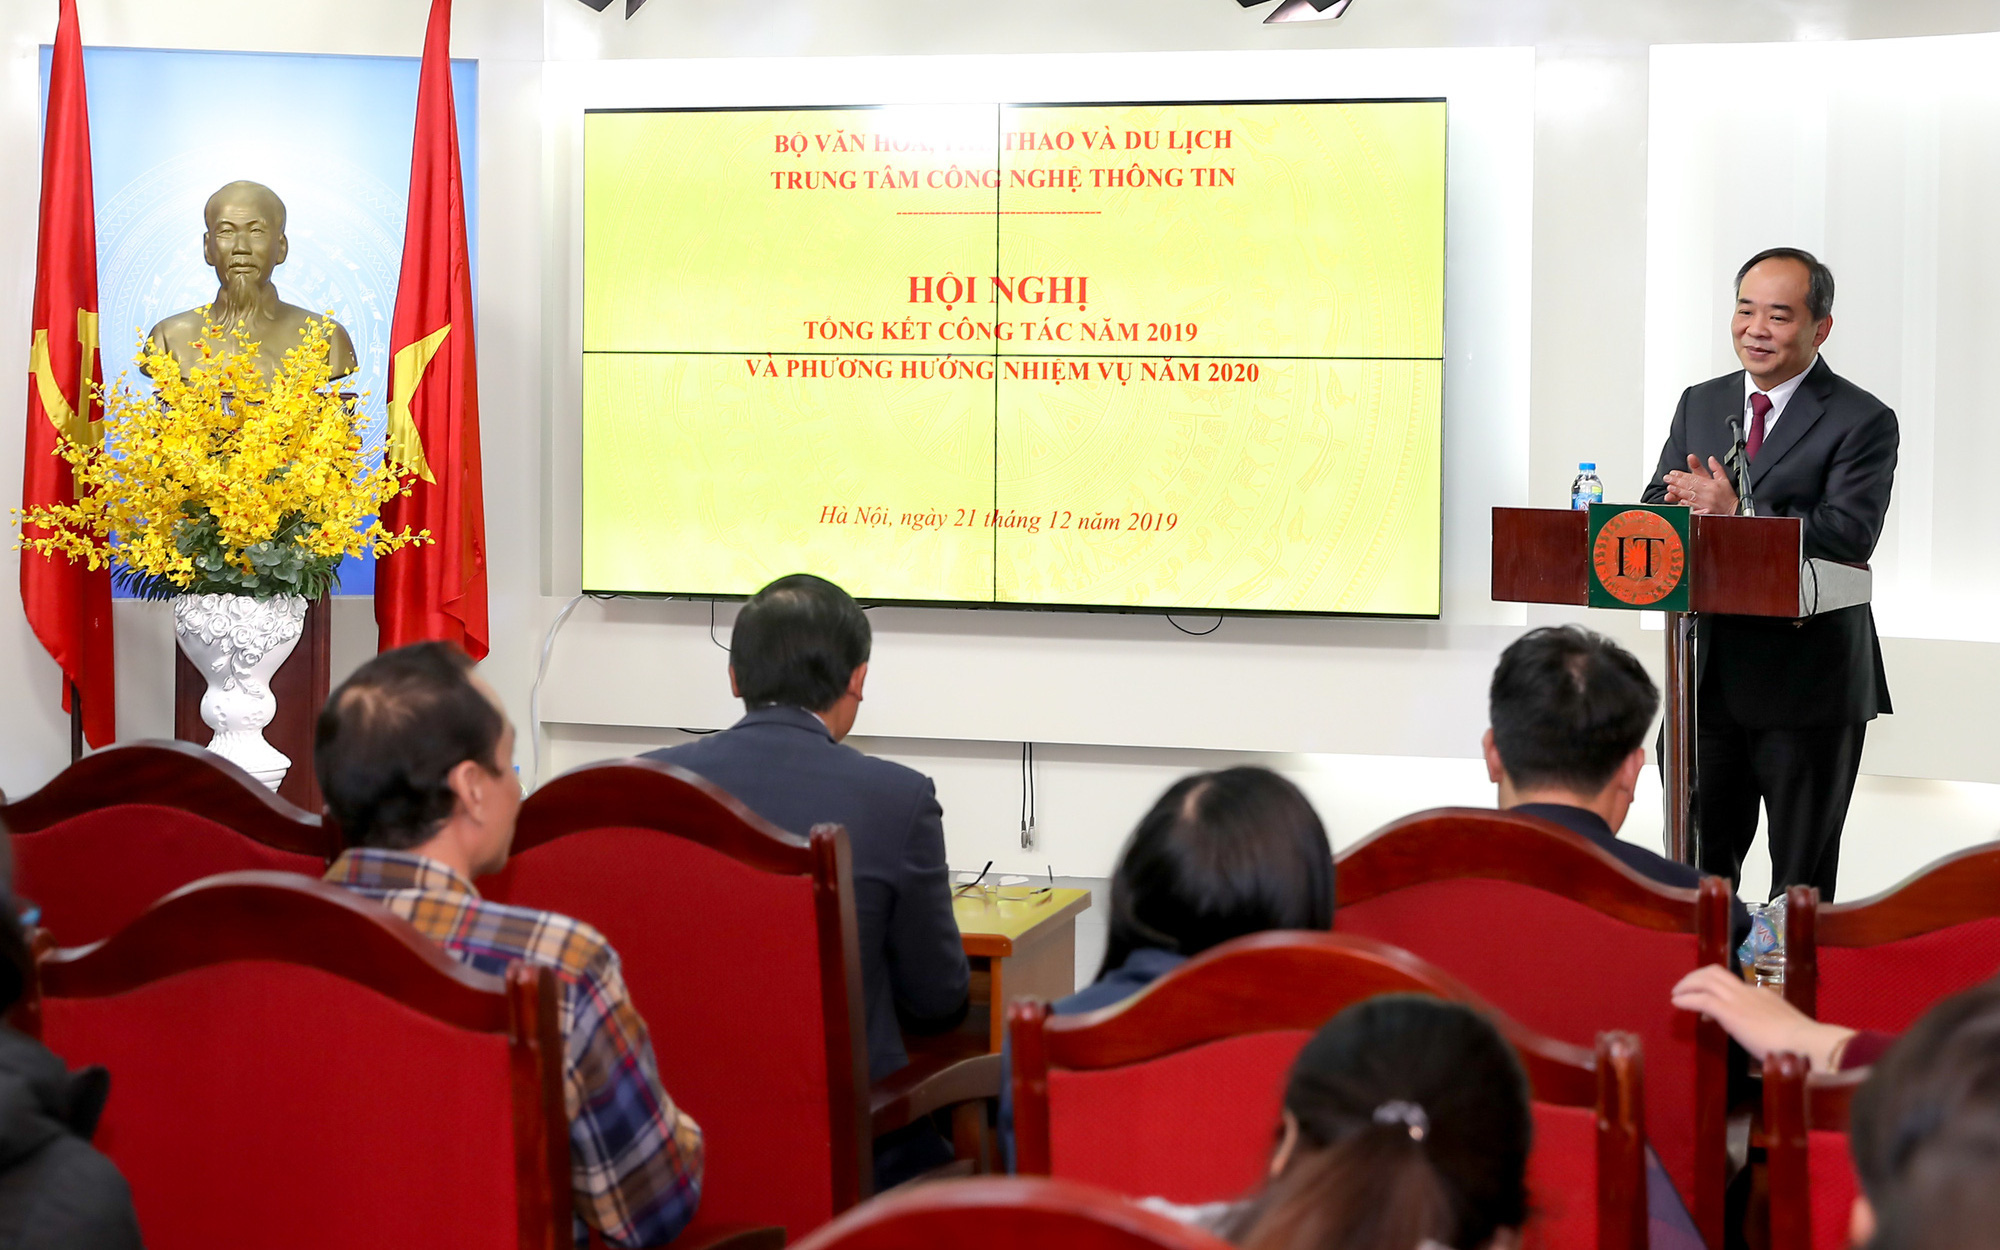 Thứ trưởng Lê Khánh Hải: Trung tâm Công nghệ thông tin đã có sự phát triển ổn định, bền vững